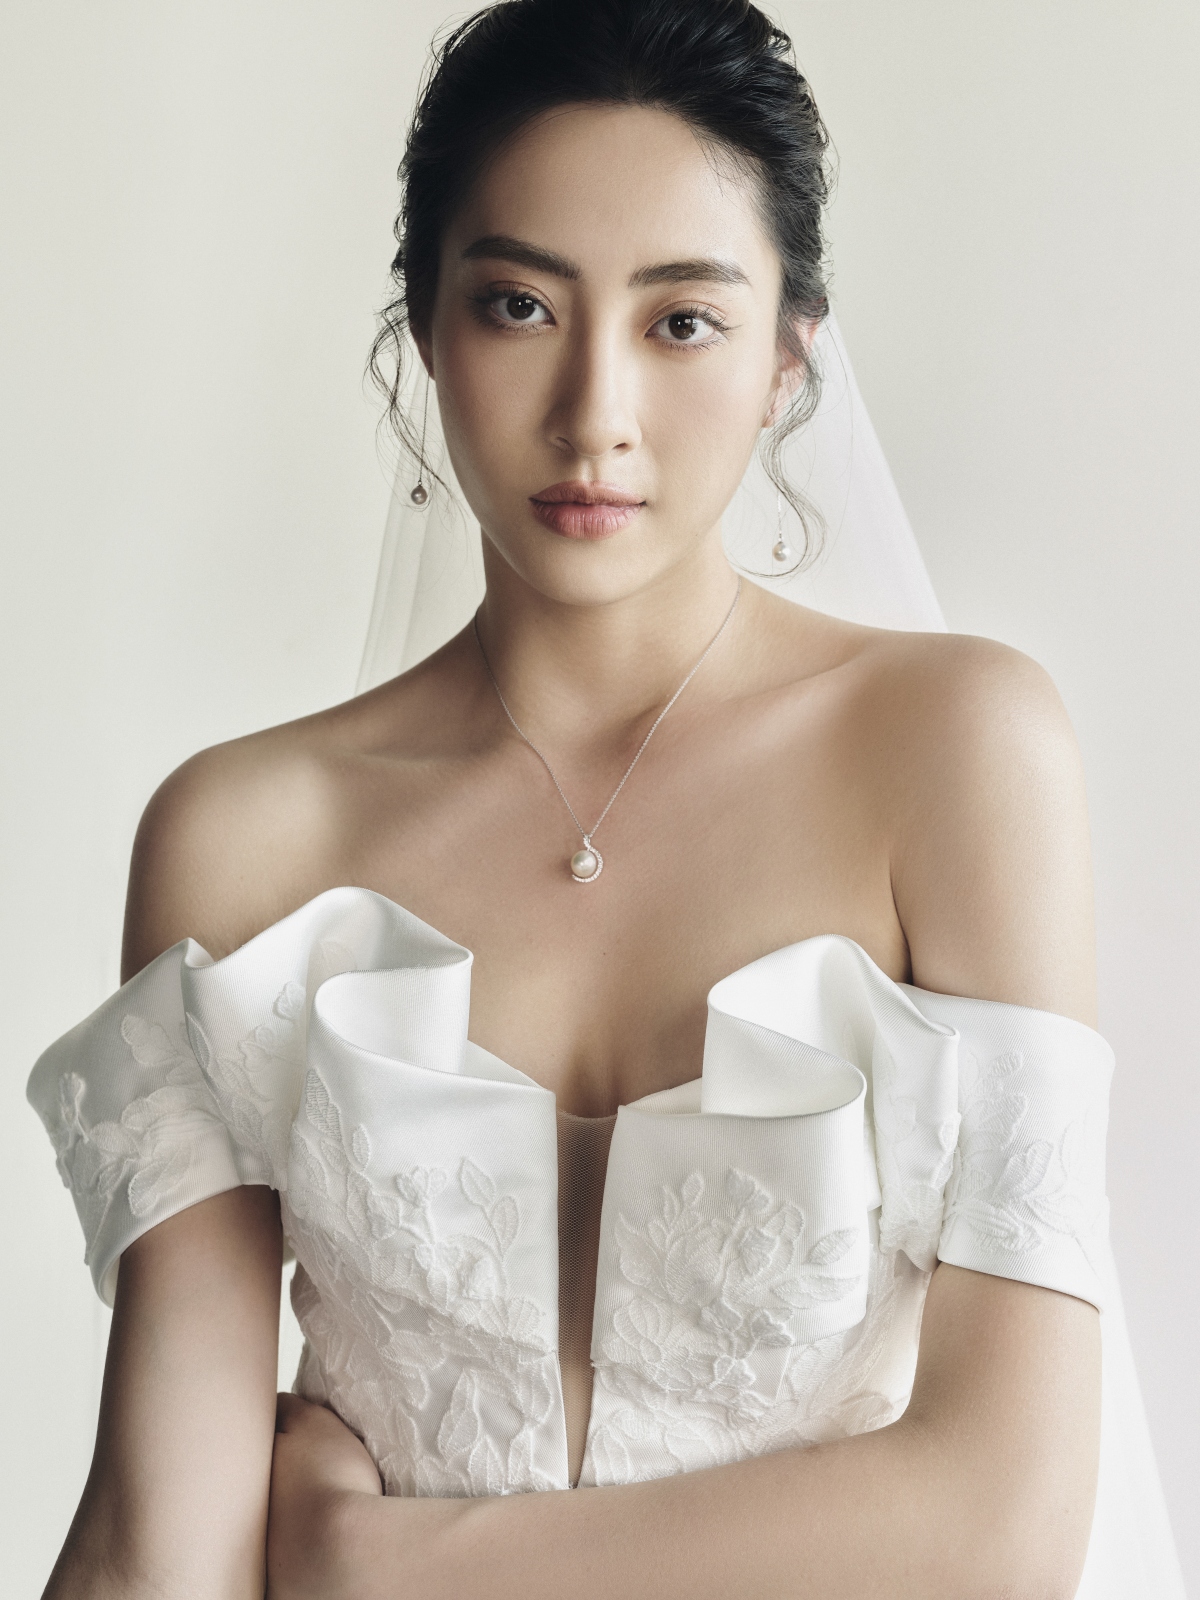 Hoa hậu Lương Thùy Linh làm cô dâu đẹp thanh khiết trong bộ ảnh mới - Ảnh 2.